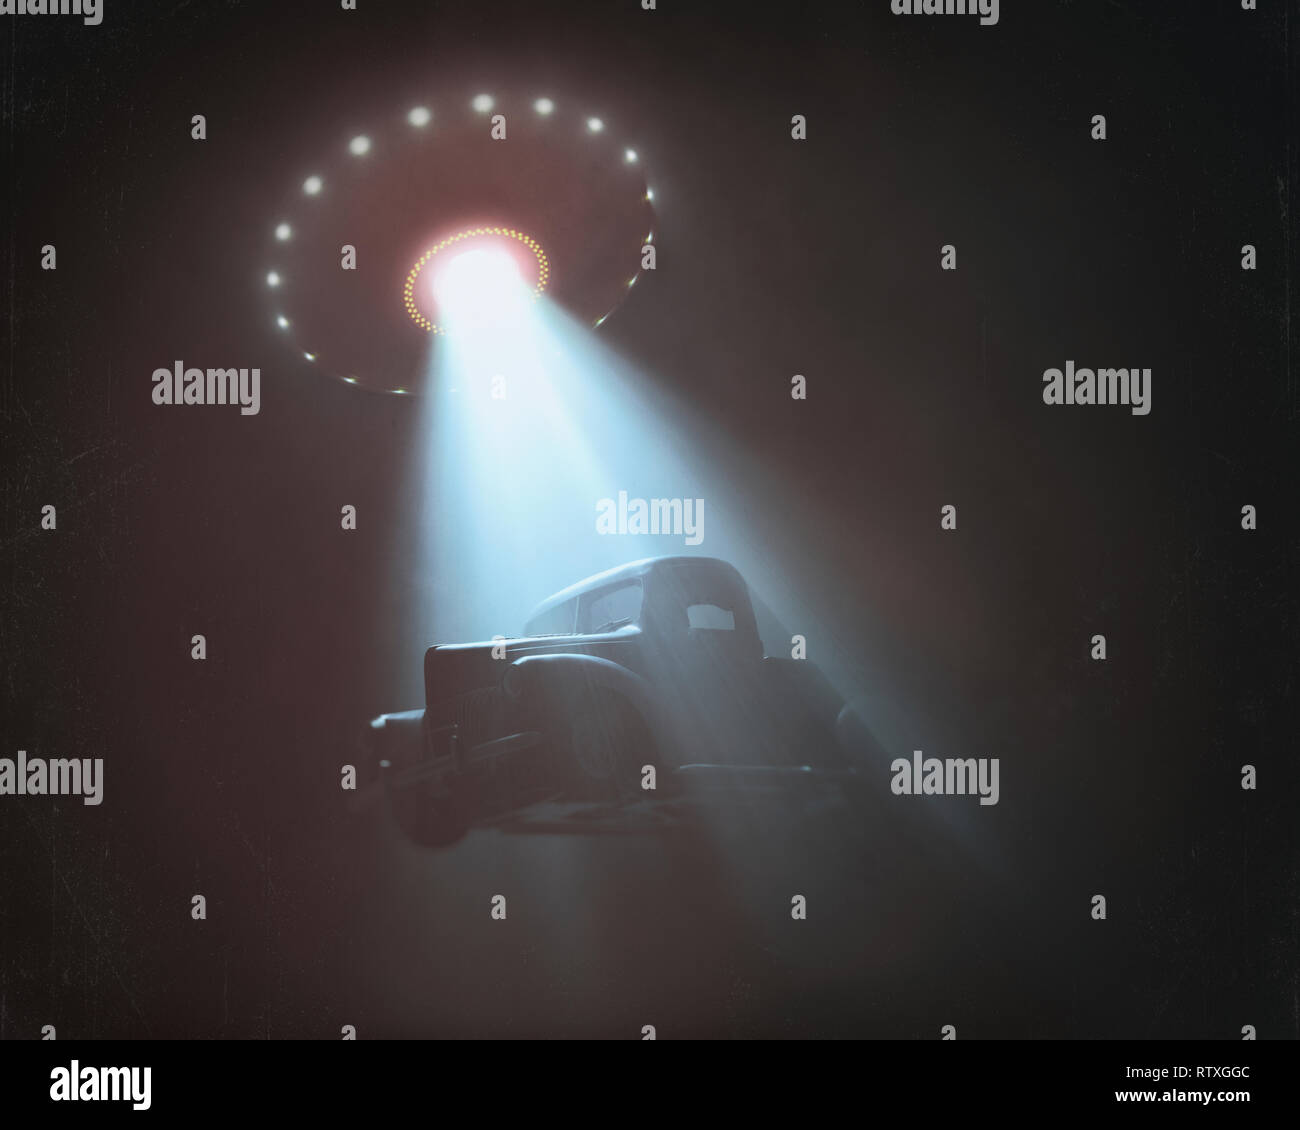 Illustration conceptuelle de Alien Abduction. Objet volant non identifié (ovni) de soulever une voiture. Banque D'Images